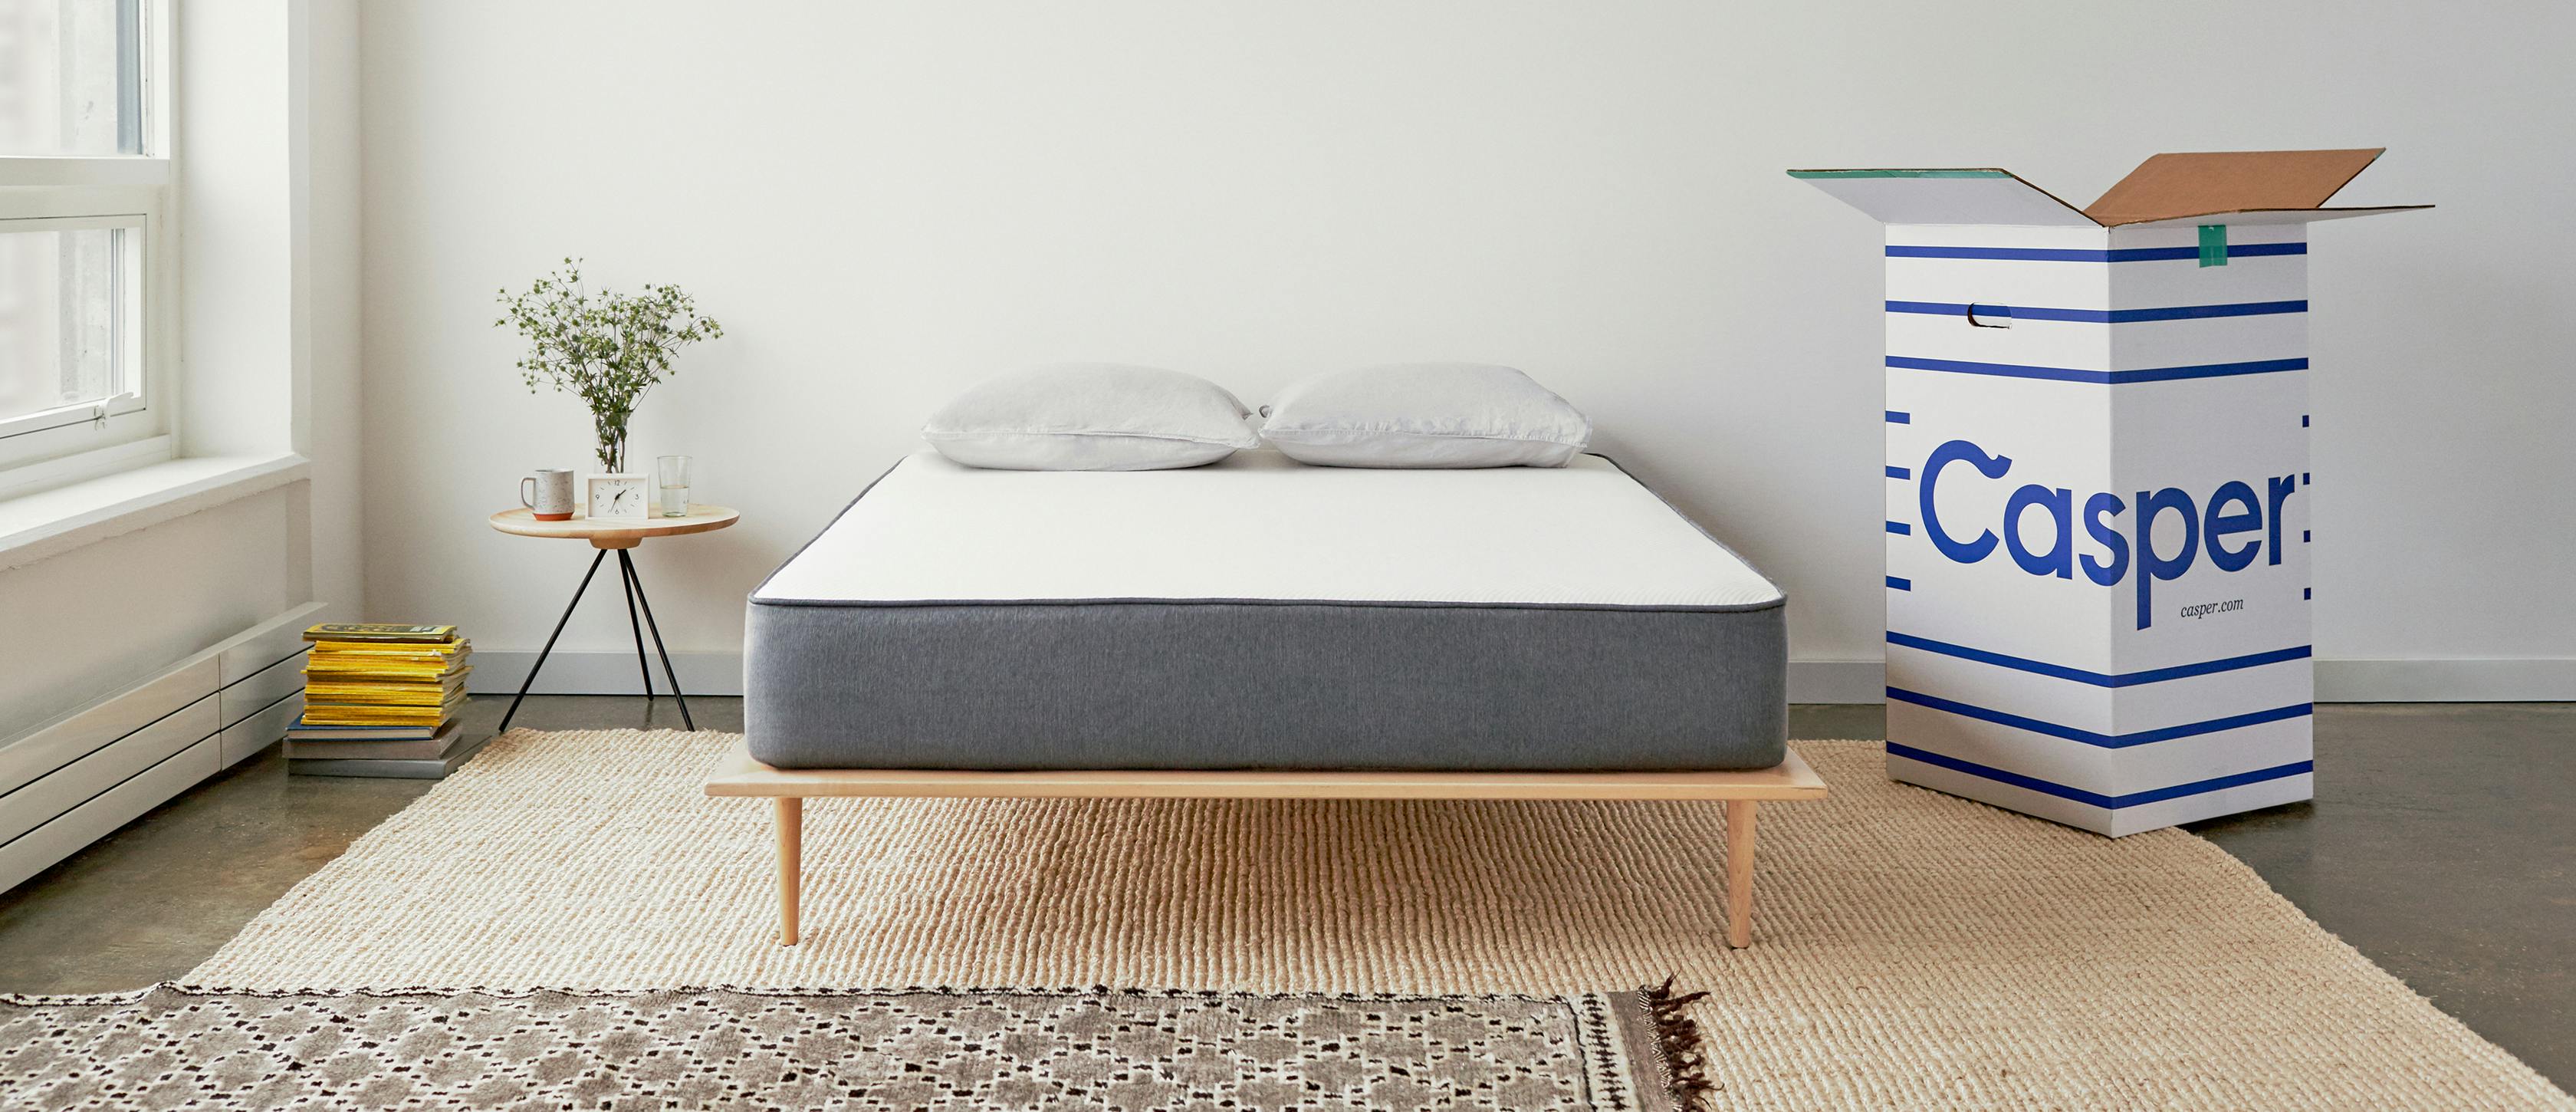 casper twin size mattress